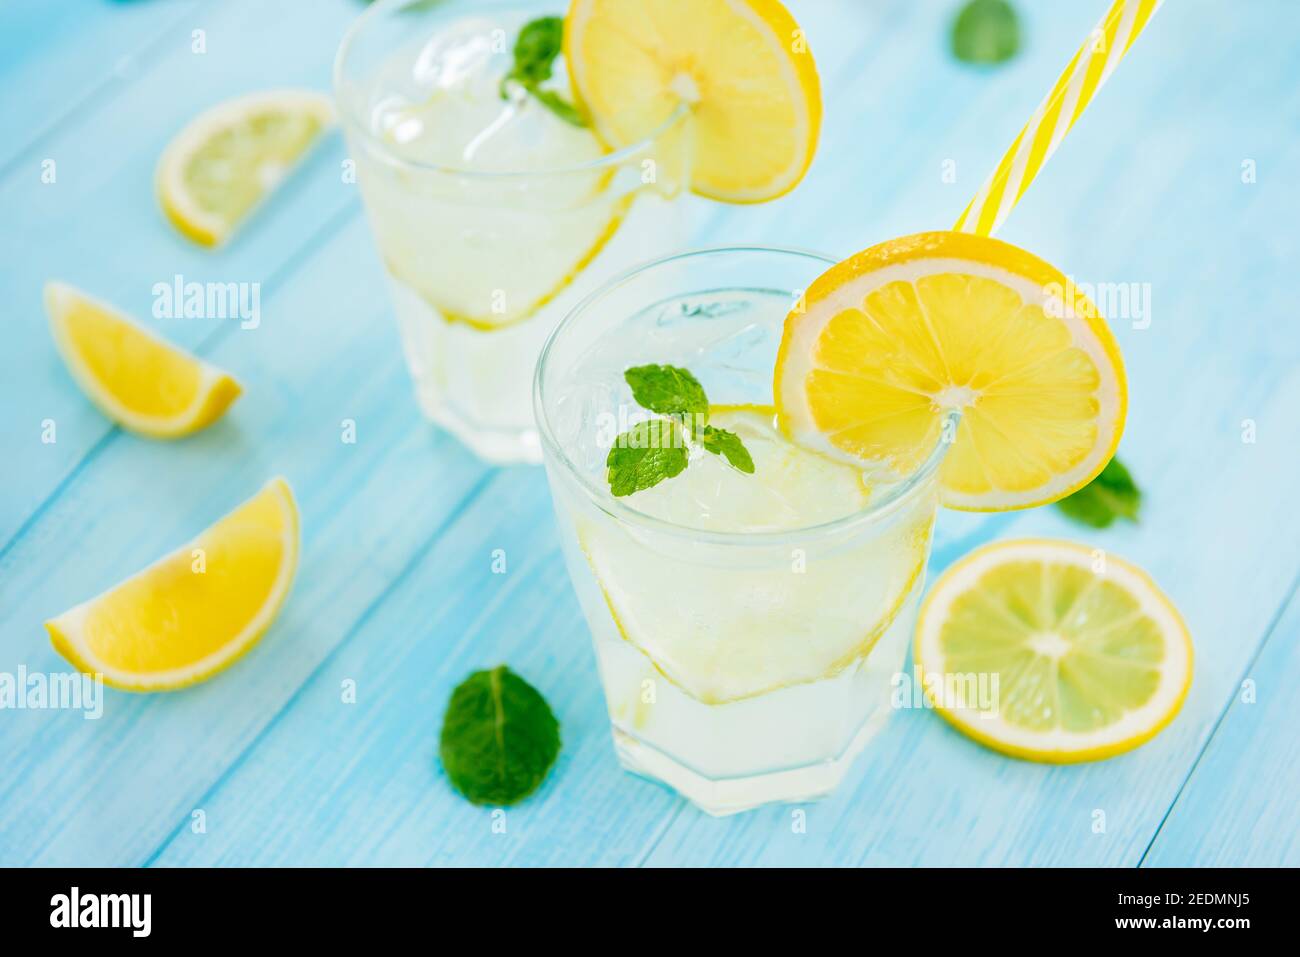 Boissons rafraîchissantes pour l'été, jus de limonade froid et aigre-doux avec glaçons dans les verres garnis de tranches de citrons frais Banque D'Images